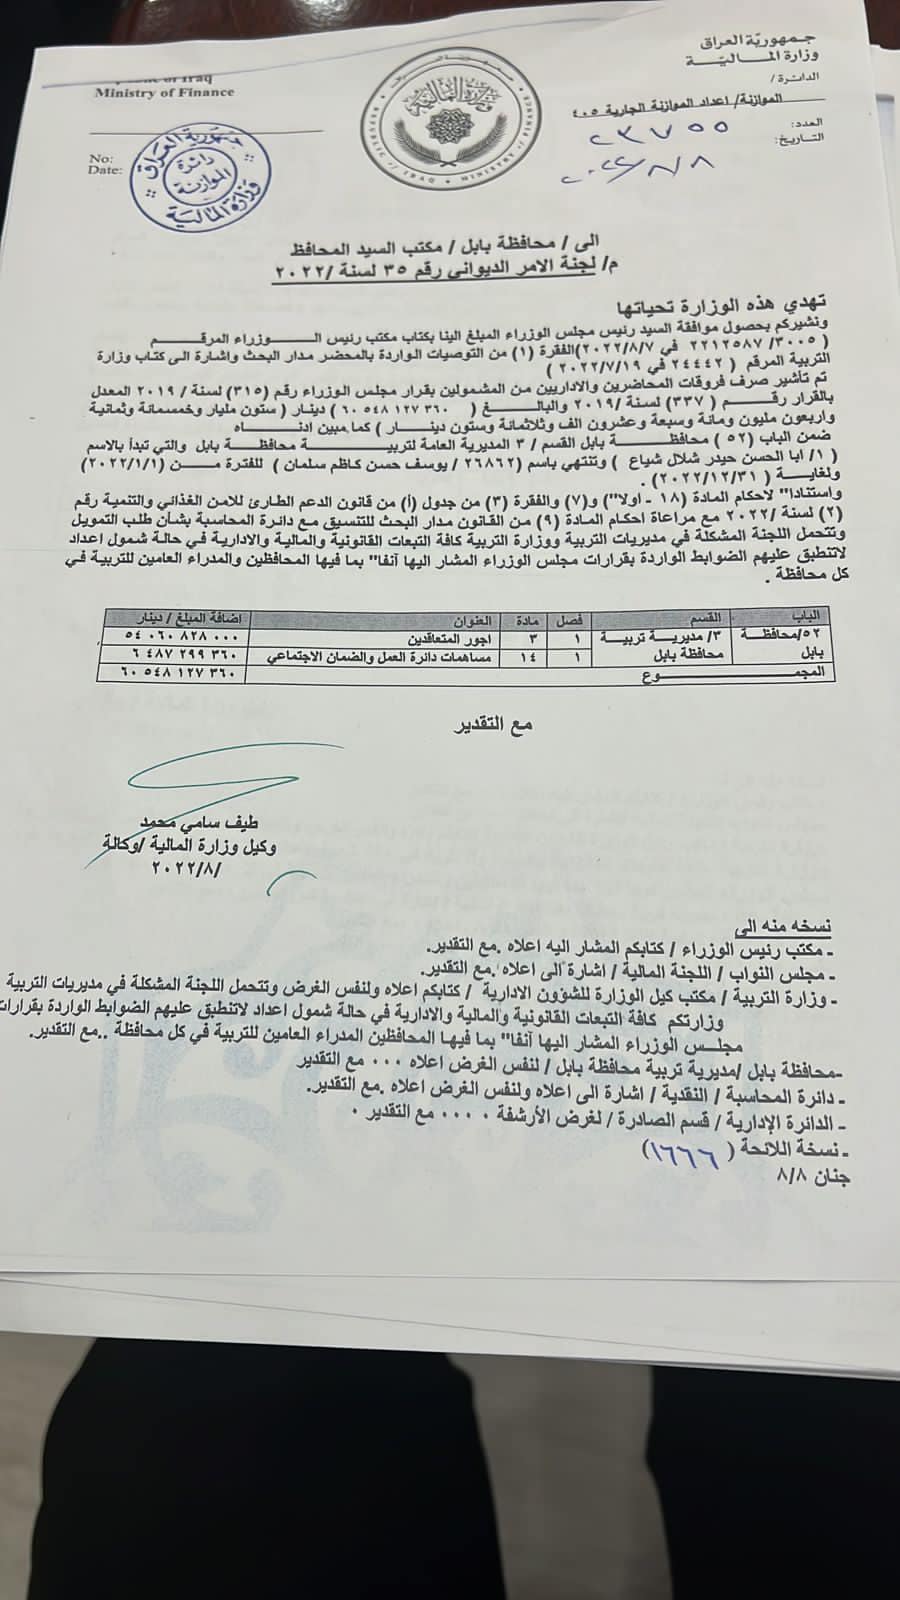 وثائق .. الحكومة العراقية تطلق المبالغ المالية للمحاضرين إضافة لفئتين